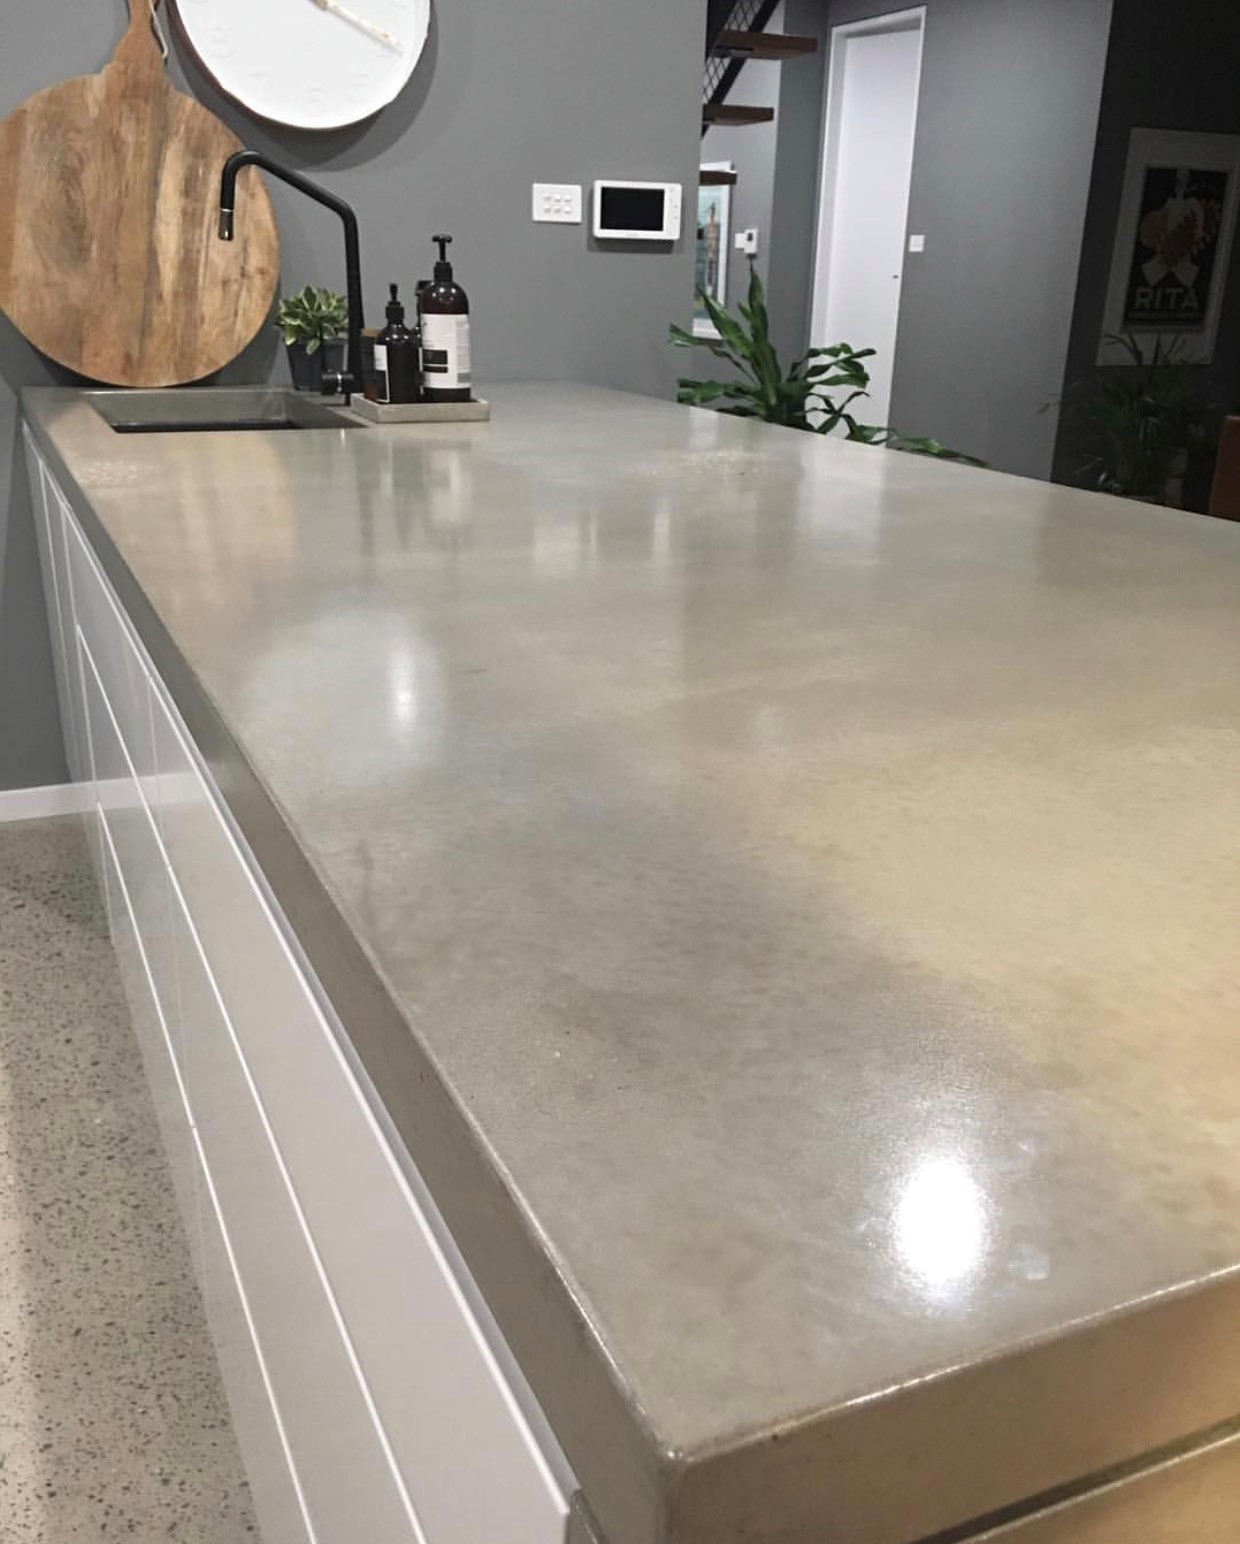 Concreate concrete countertop